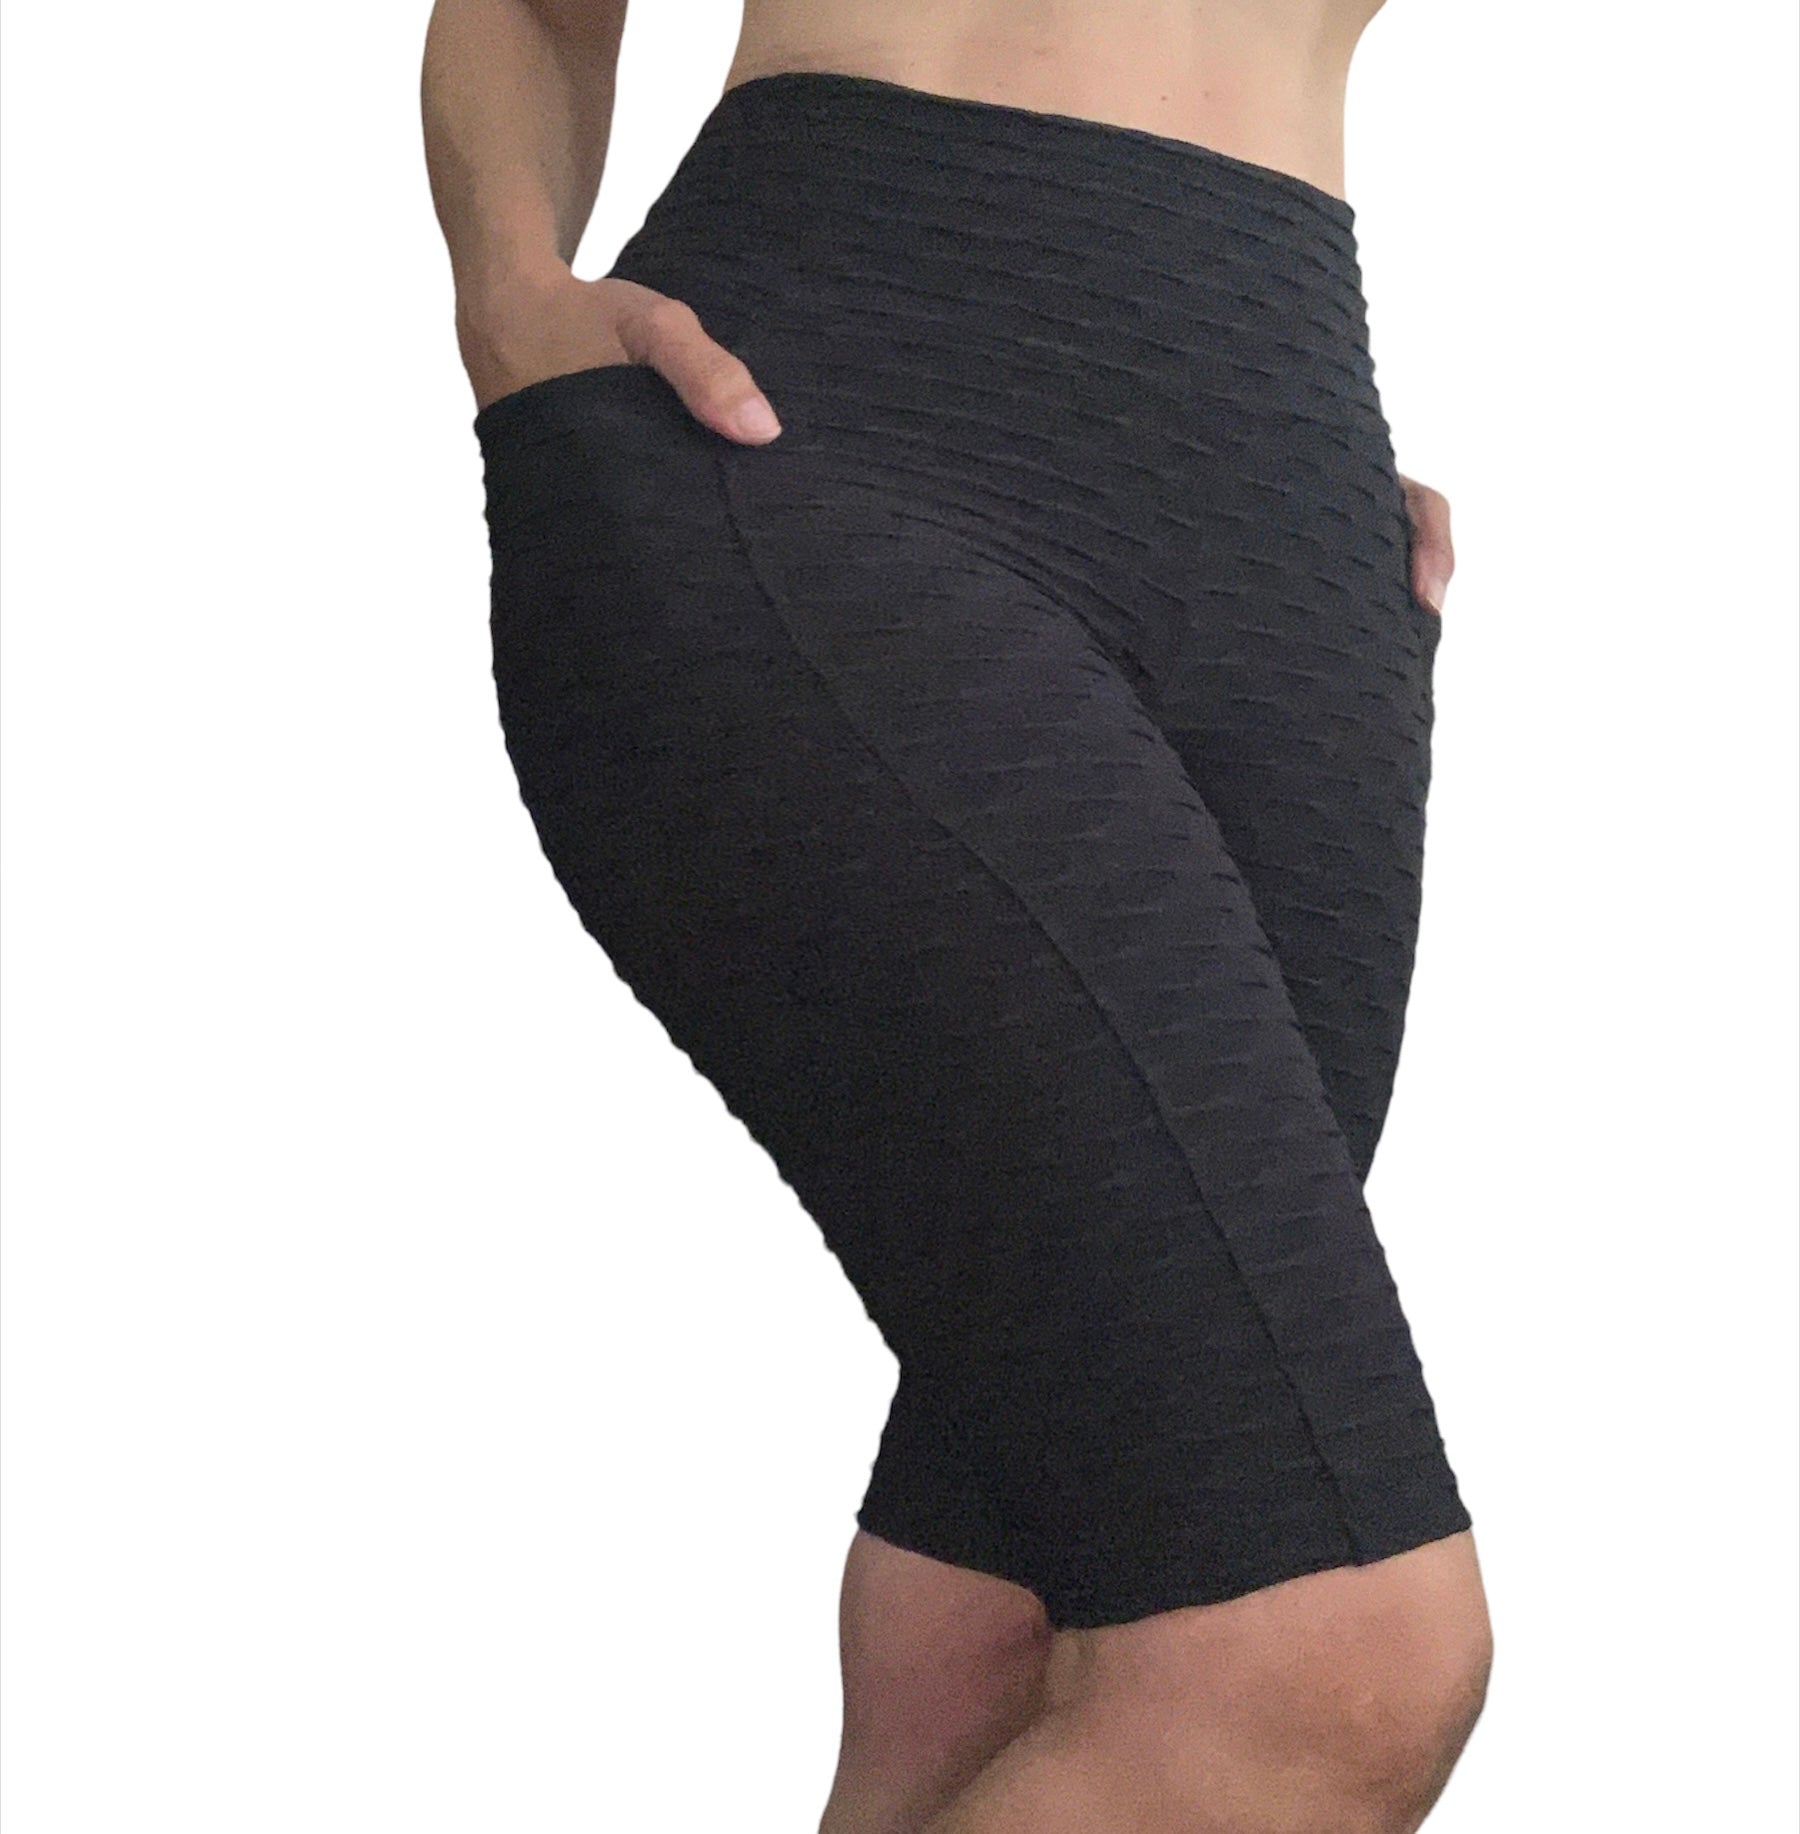 Metallic Honeycomb Shorts – BumBum Bacana Fitness Apparel